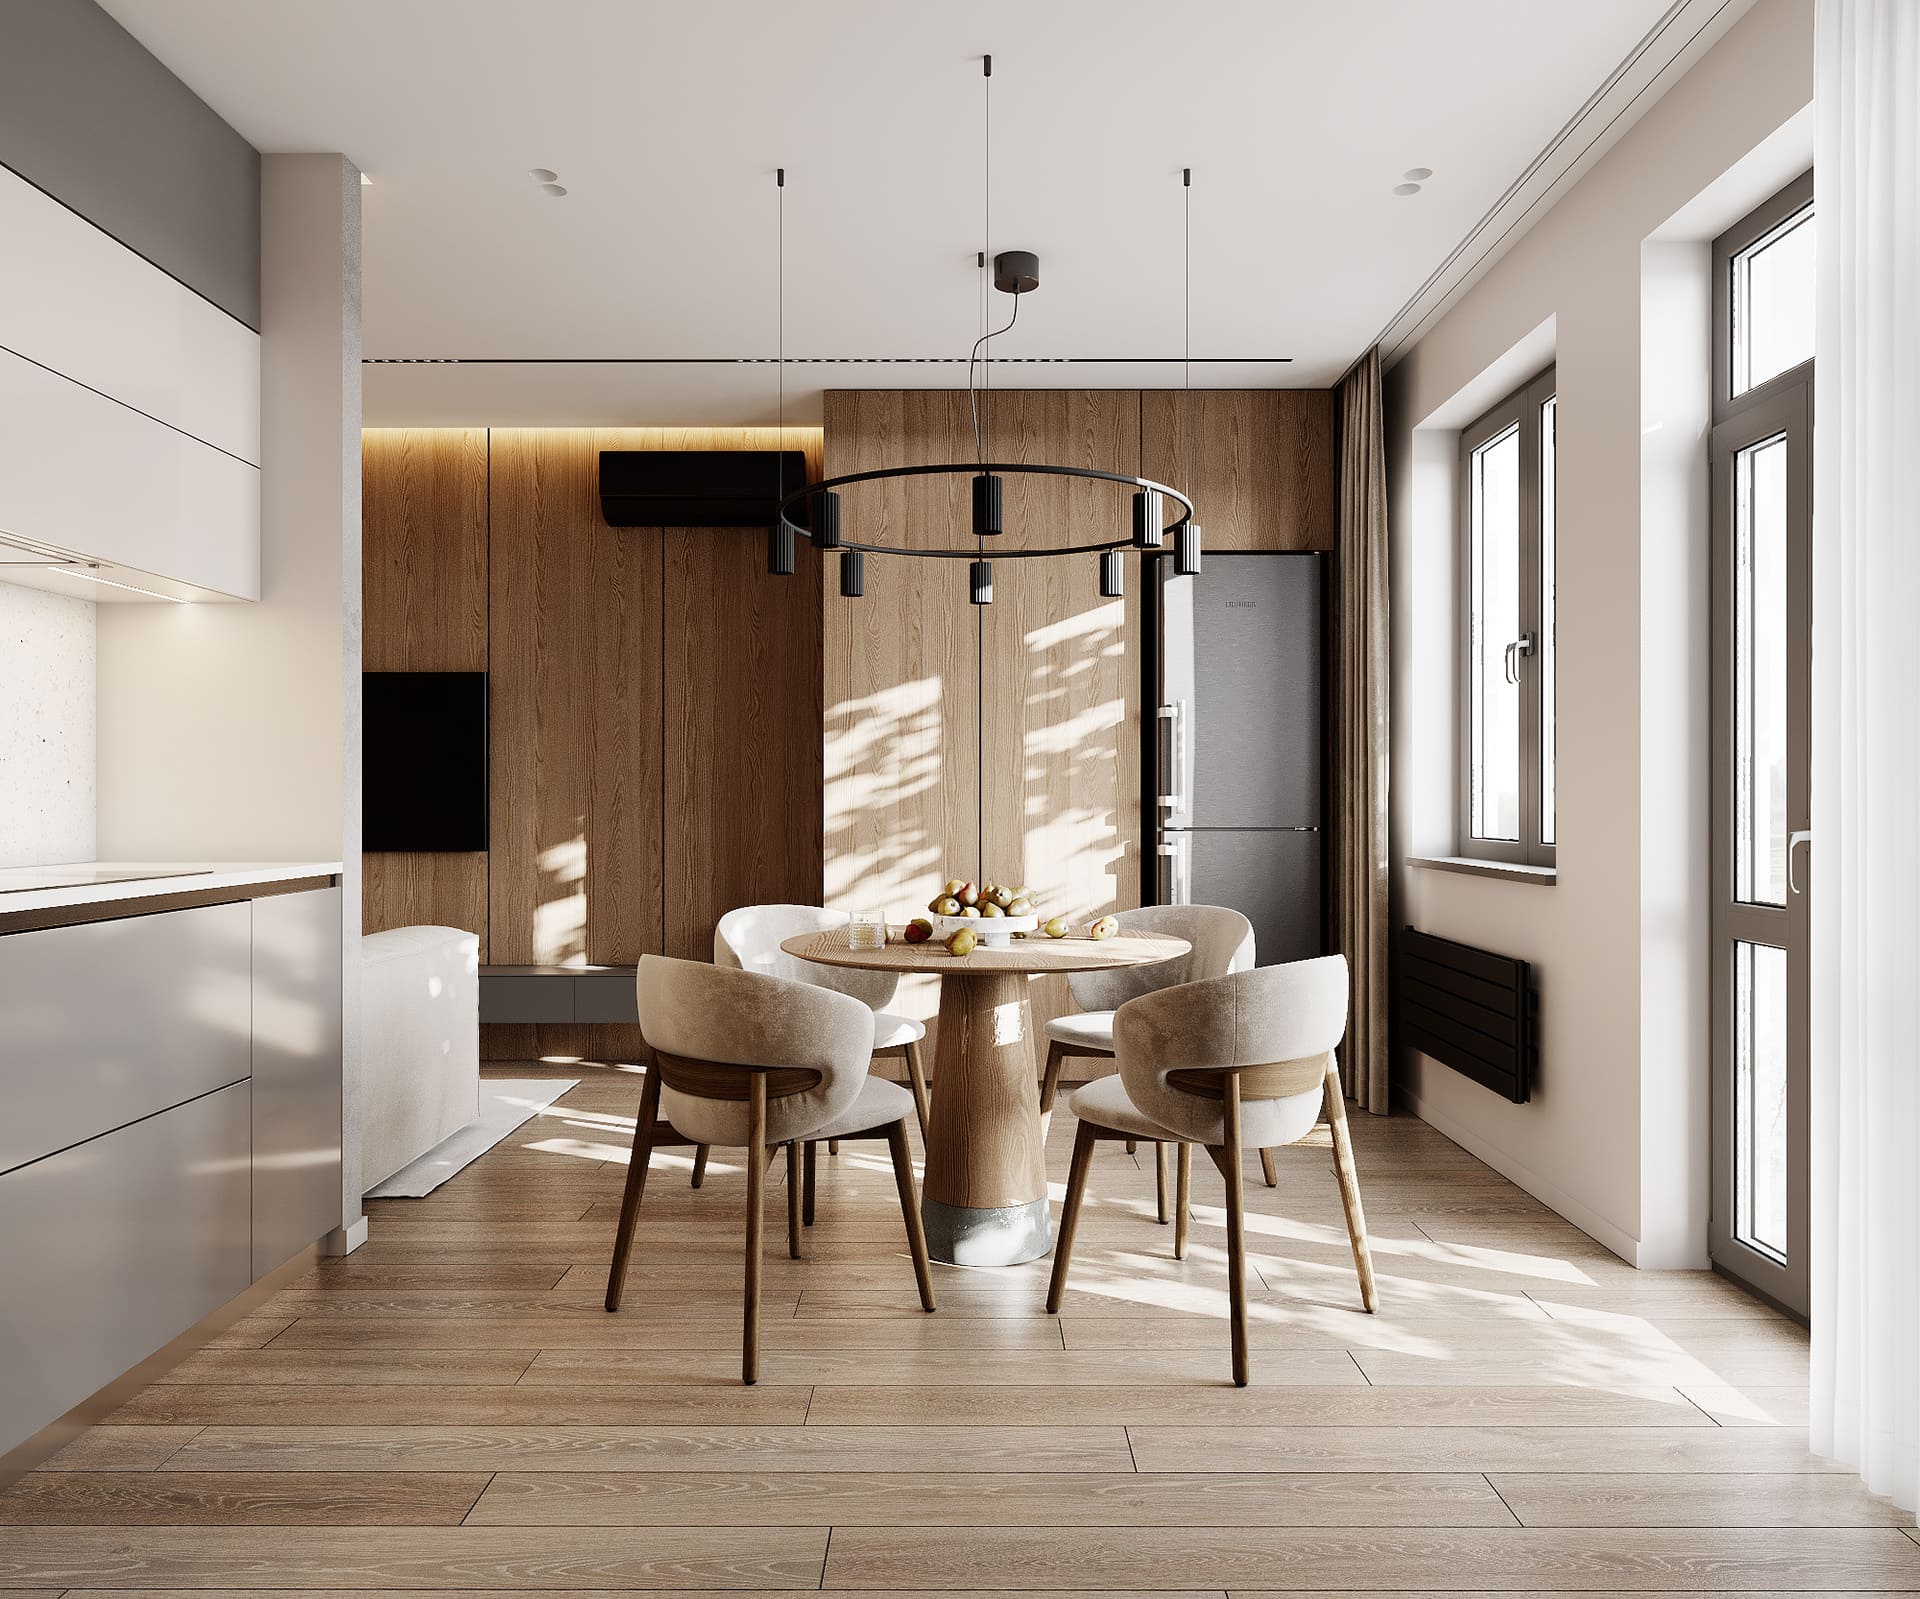 Лаконичная квартира в стиле минимализм, кухня-гостинная, фото 17